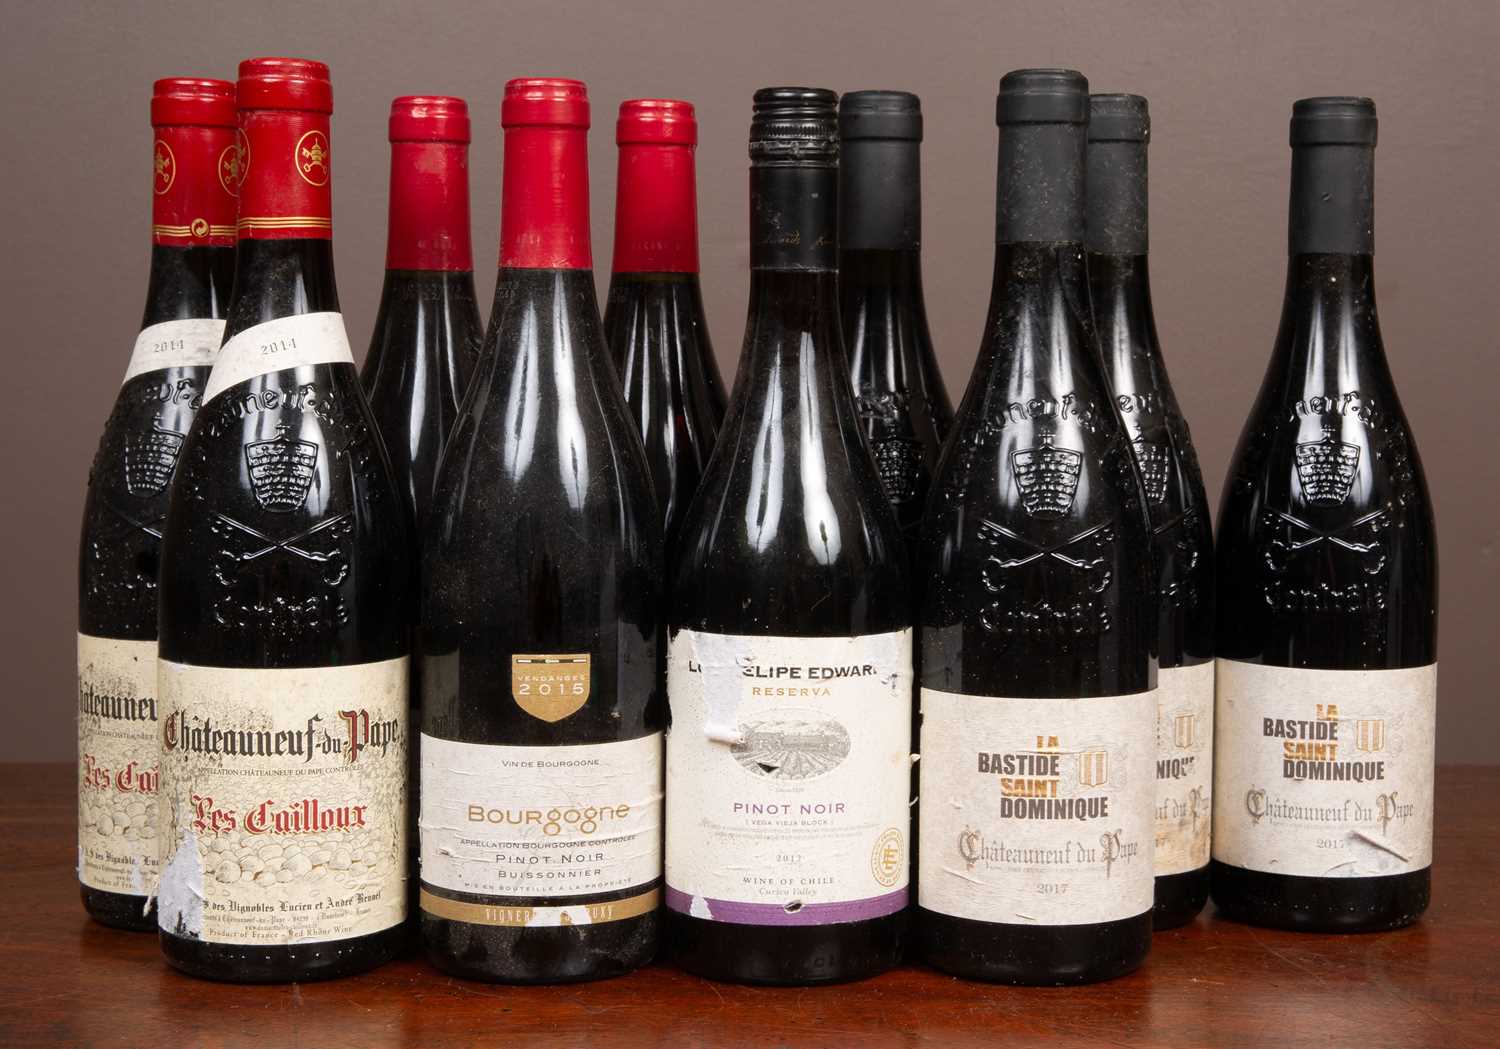 Lot 94 - Four bottles of La Bastide Saint Dominique Chateau Neuf Du Pape 2017